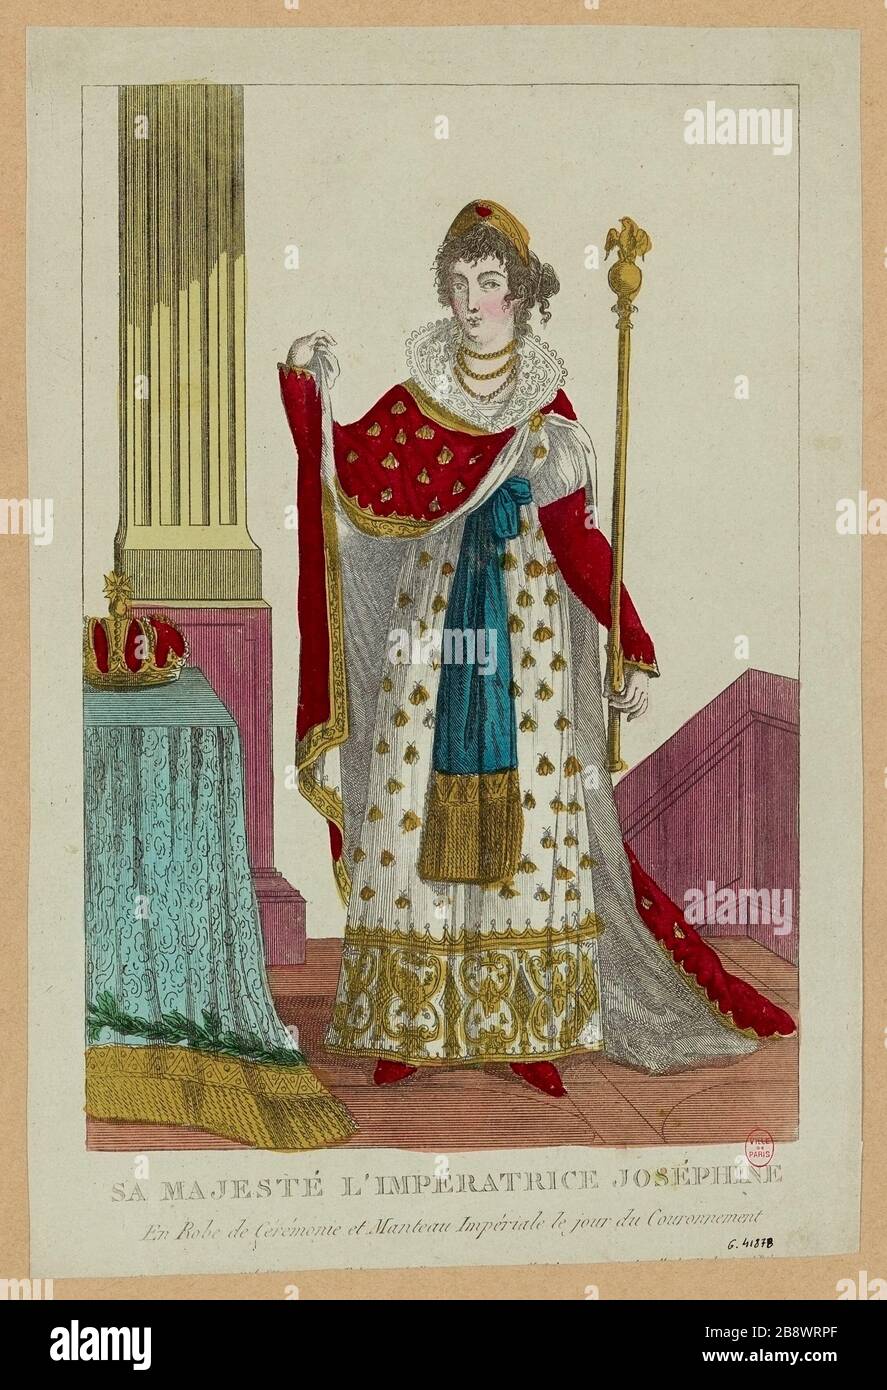 Sa Majesté l'impératrice Josephine / en robe et manteau impérial le jour du couronnement Banque D'Images